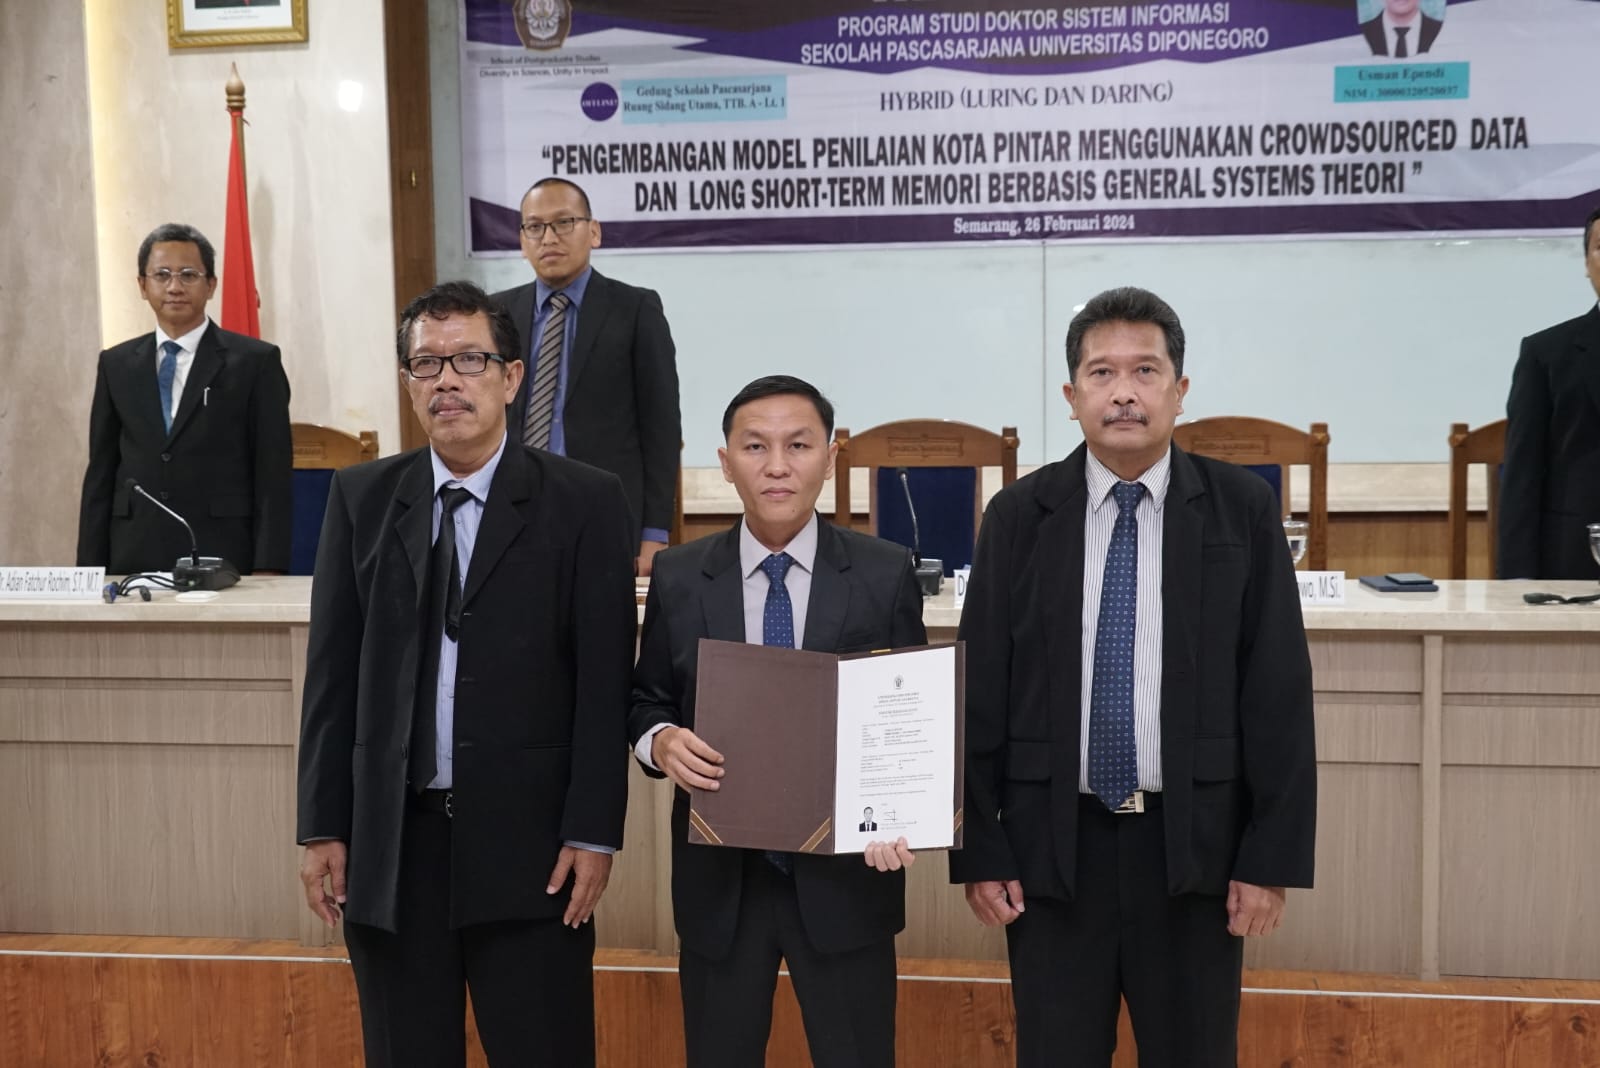 Dosen Universitas Bina Darma Palembang Jadi Lulusan Pertama Doktor Sistem Informasi yang Raih IPK 4.00